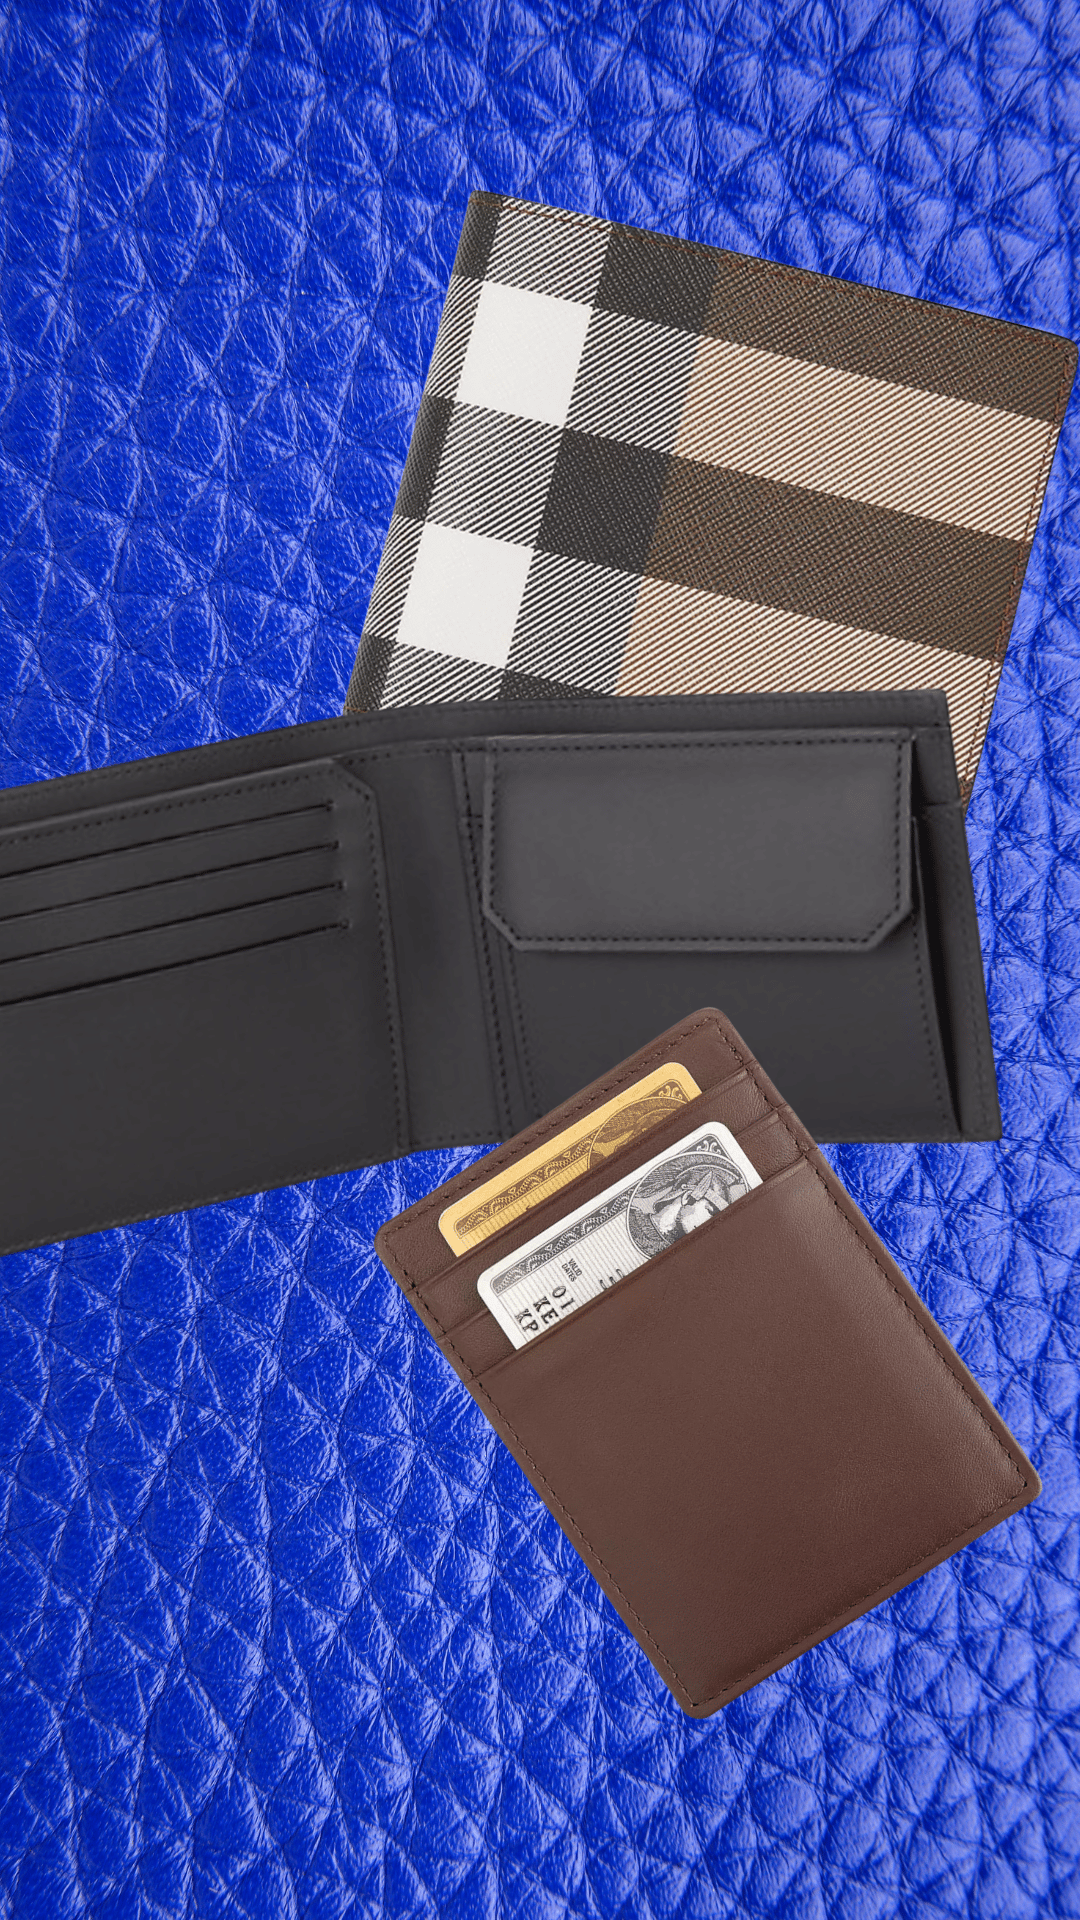 Leather & Designer Wallets For Men